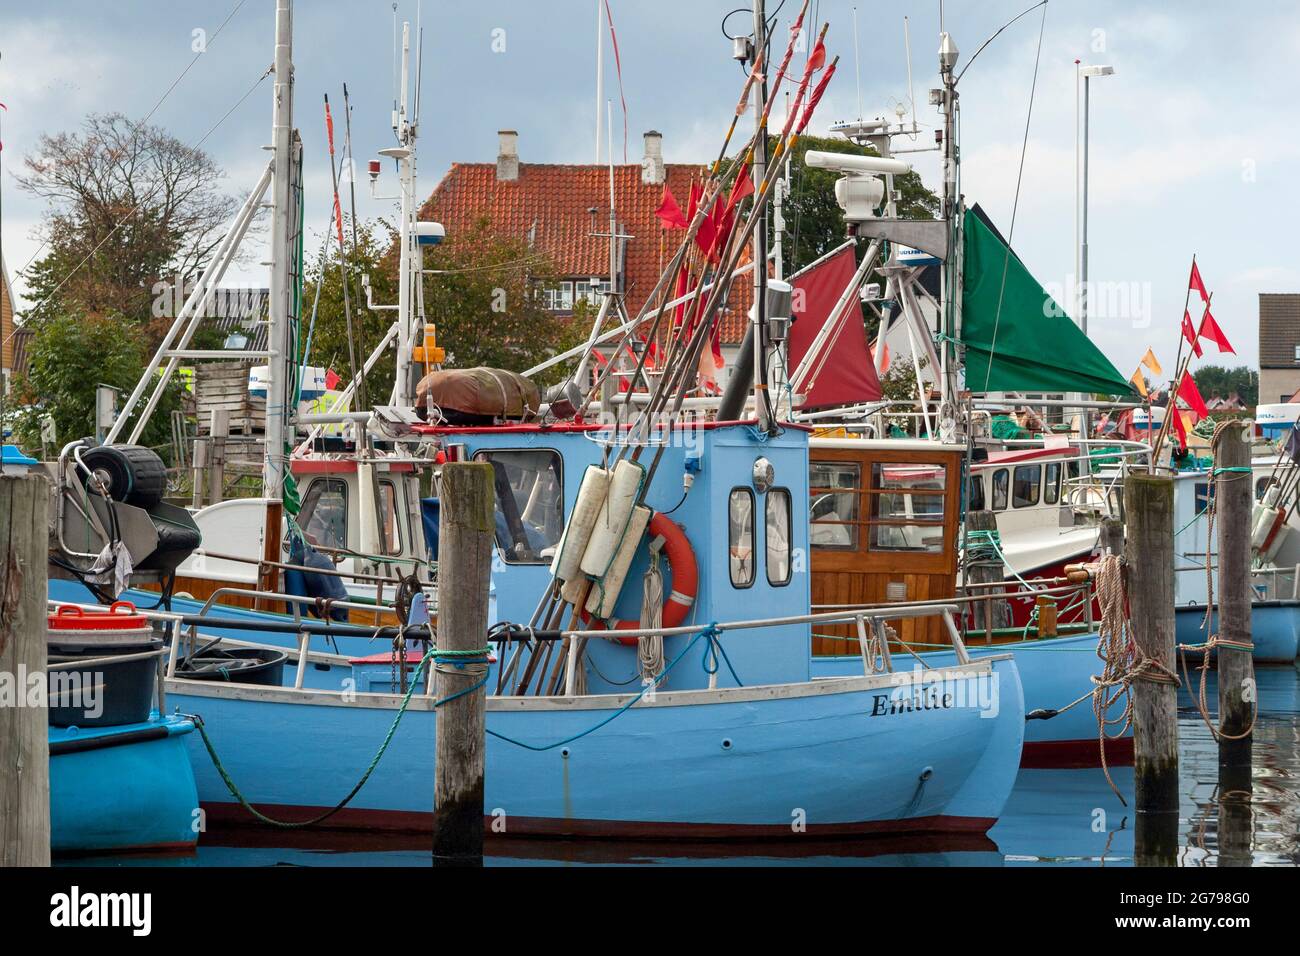 Danemark, île de la Zélande, Gribskov-Gilleleje, le plus grand port de pêche de l'île de la Zélande près de Gilleleje, station balnéaire et village de pêche dans le nord de la plus grande île de la mer Baltique. Banque D'Images